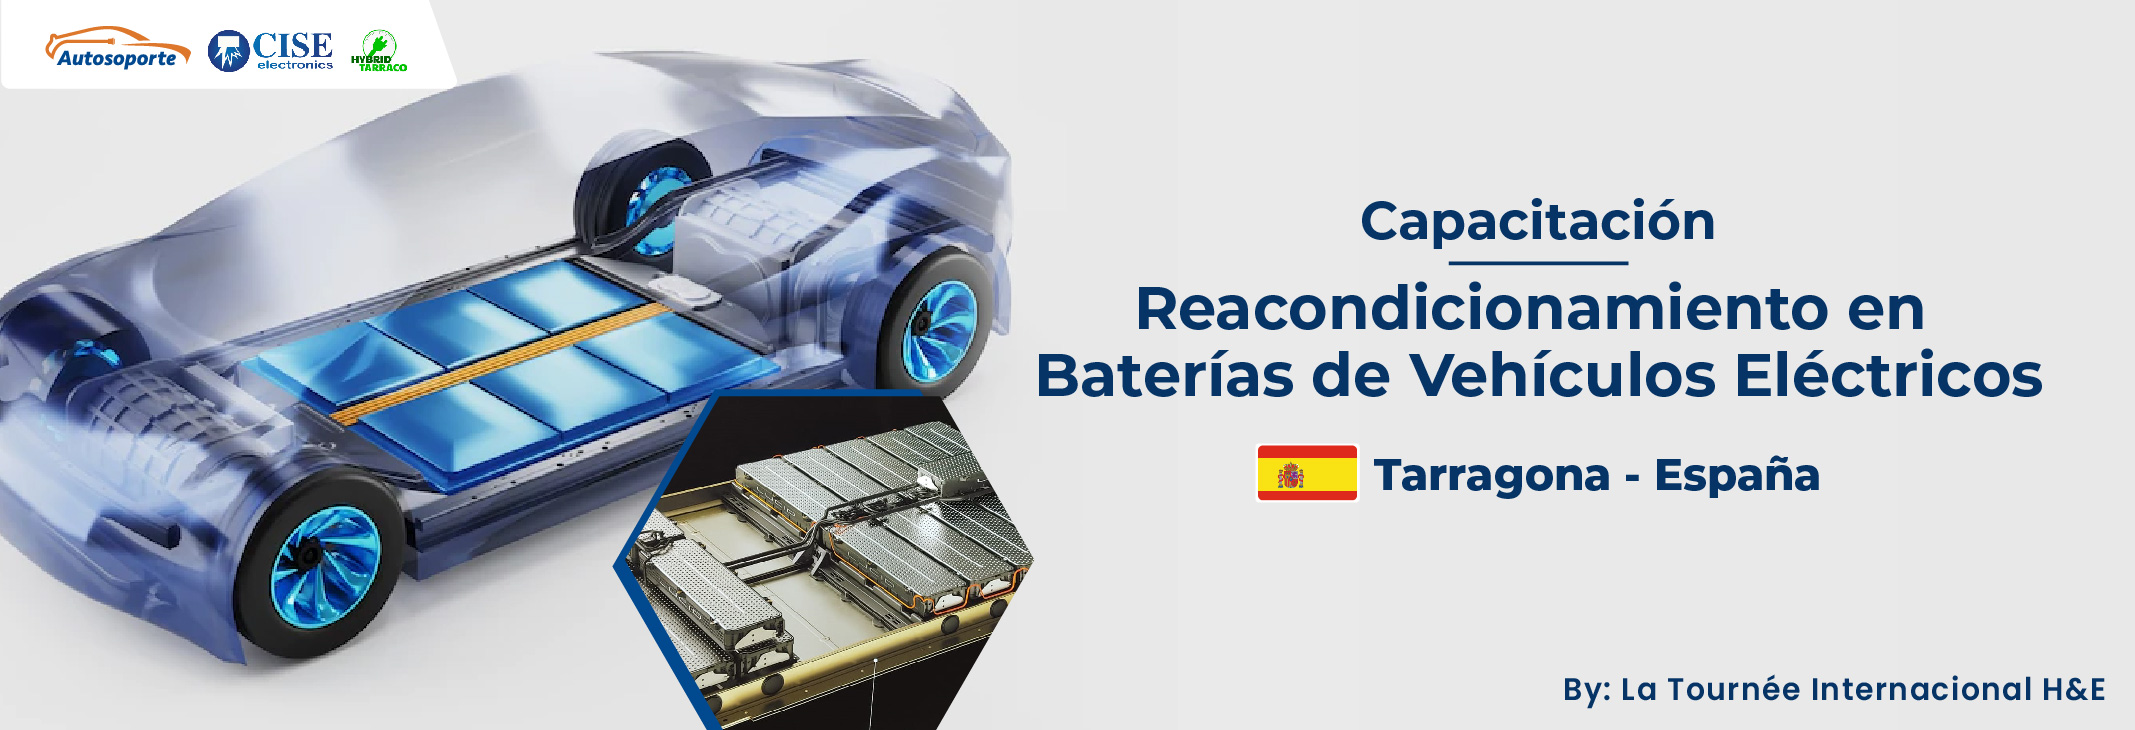 Especialidad en reacondicionamiento en Baterias de Vehiculos Electricos Tarragona Espana 2022 banner web copia